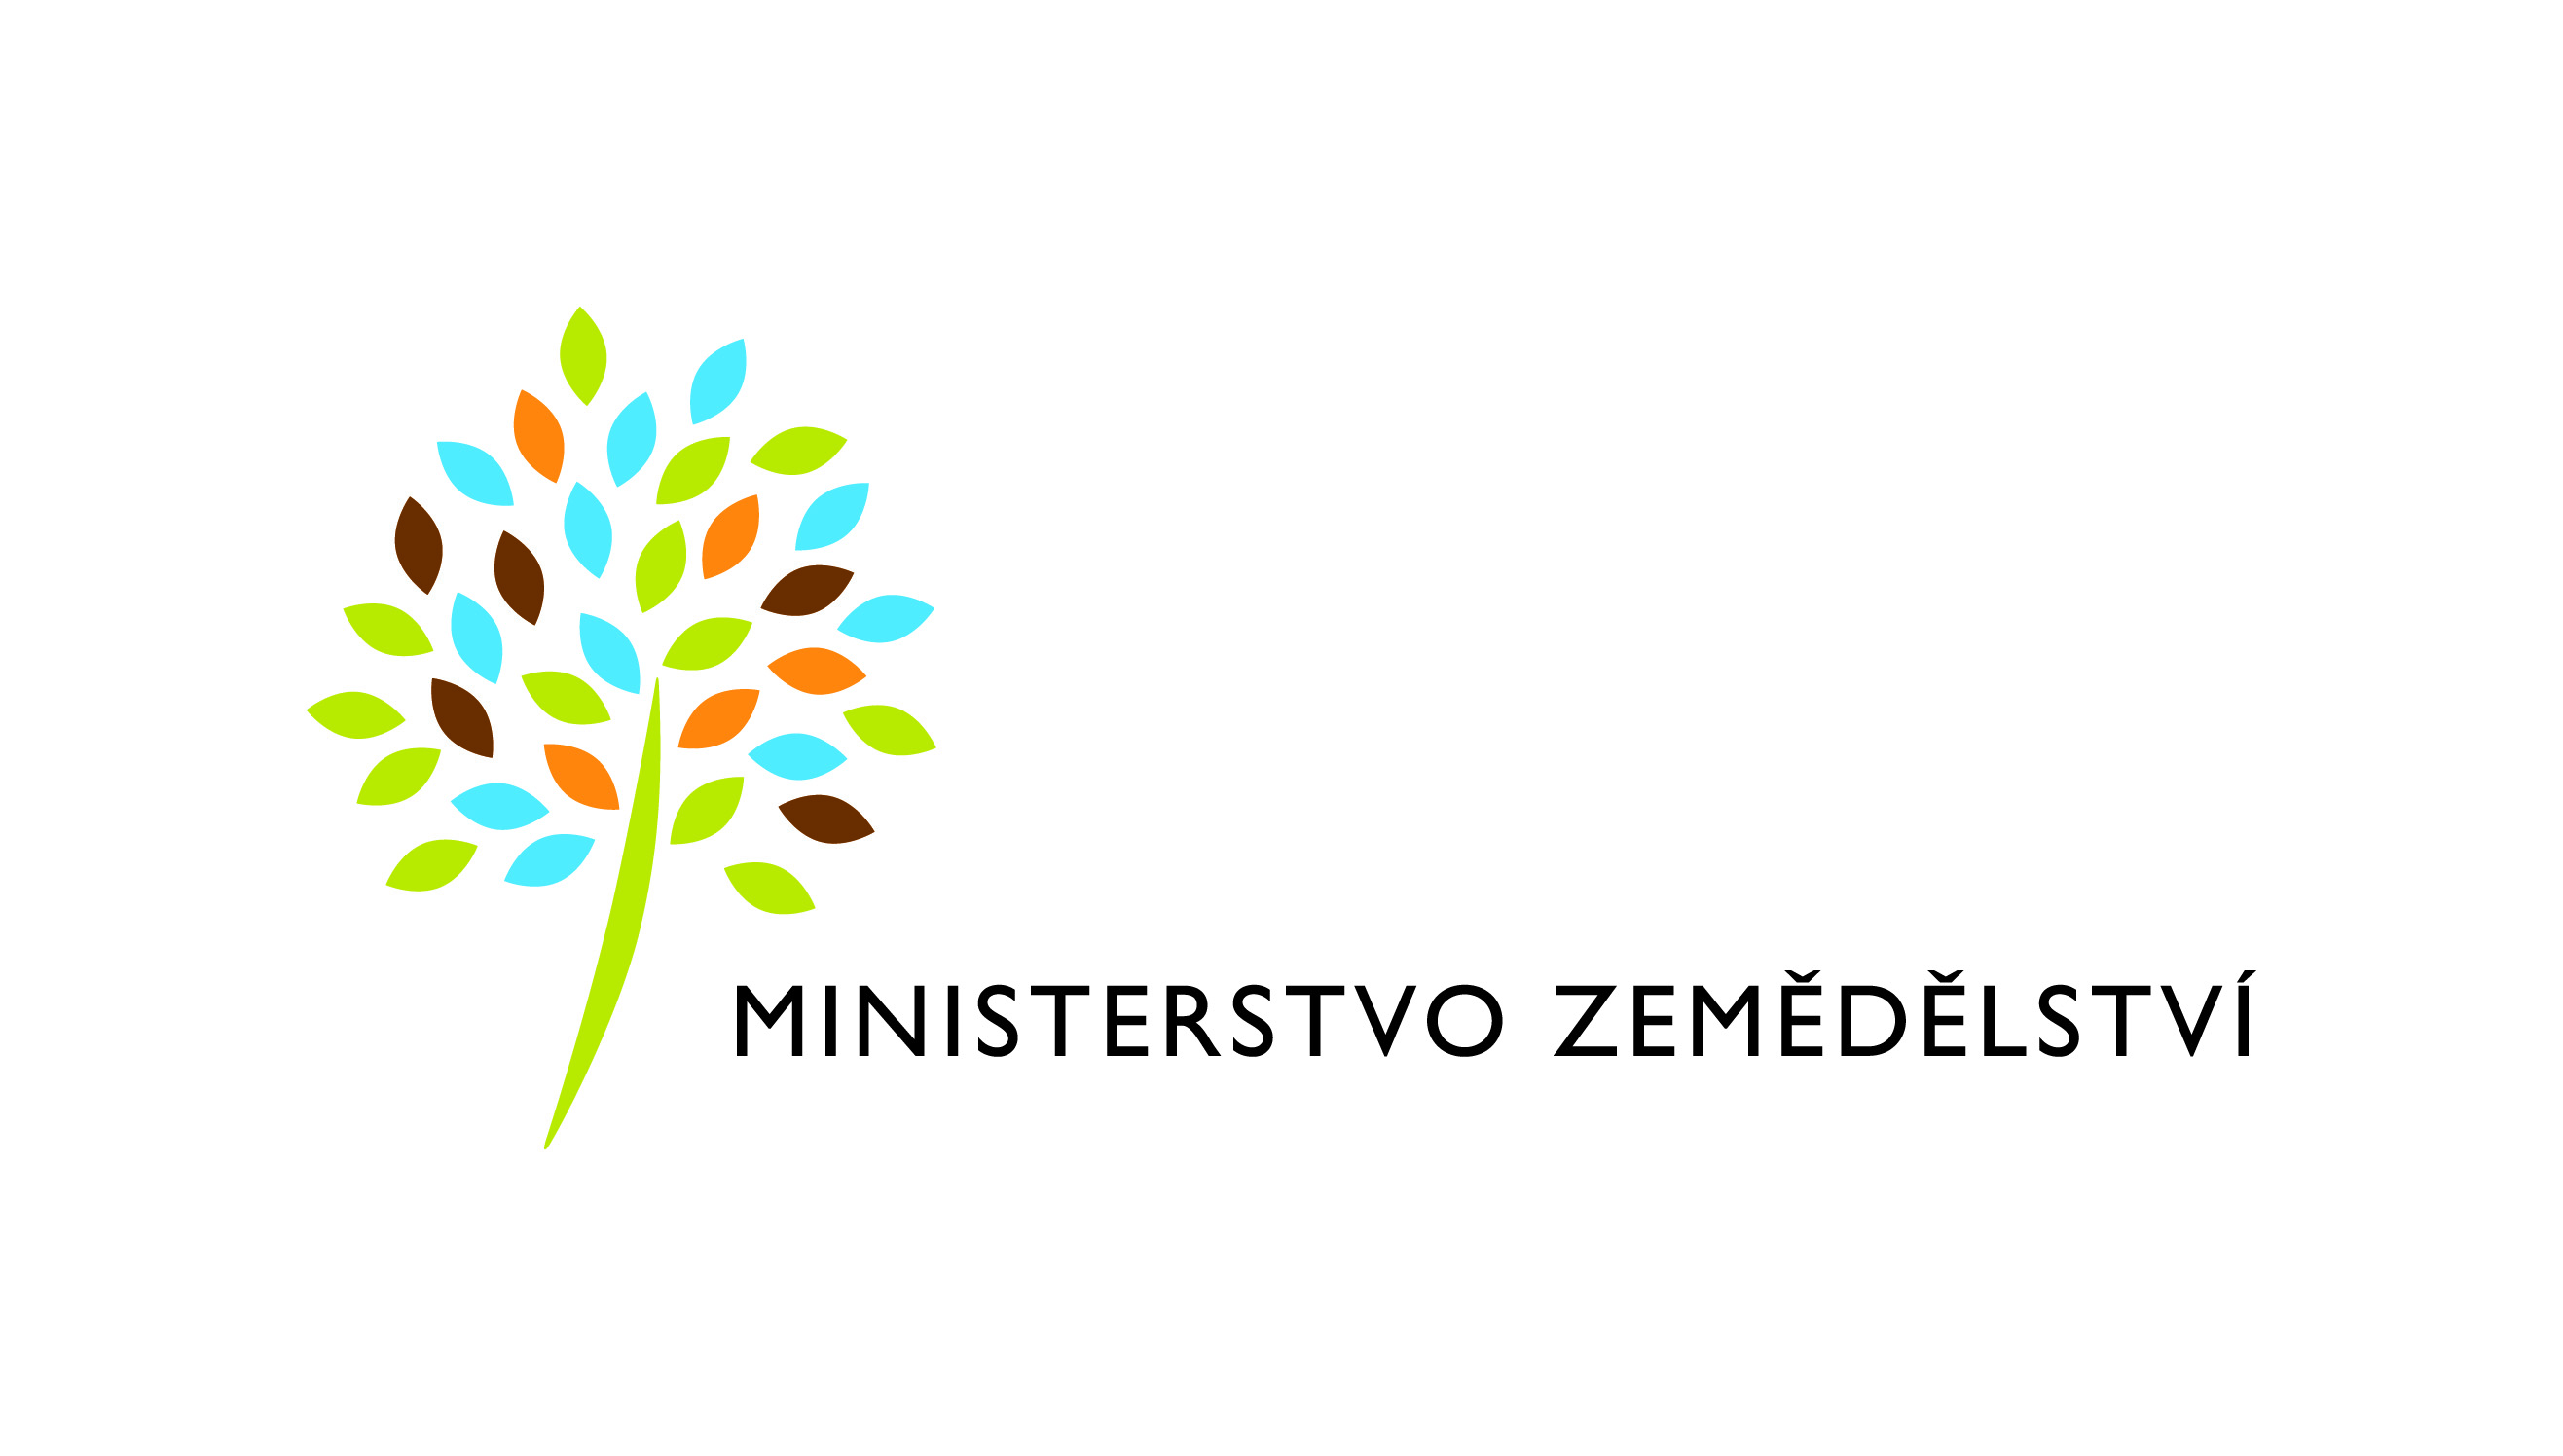 Záštitu nad akcí převzal ministr zemědělství Marek Výborný.